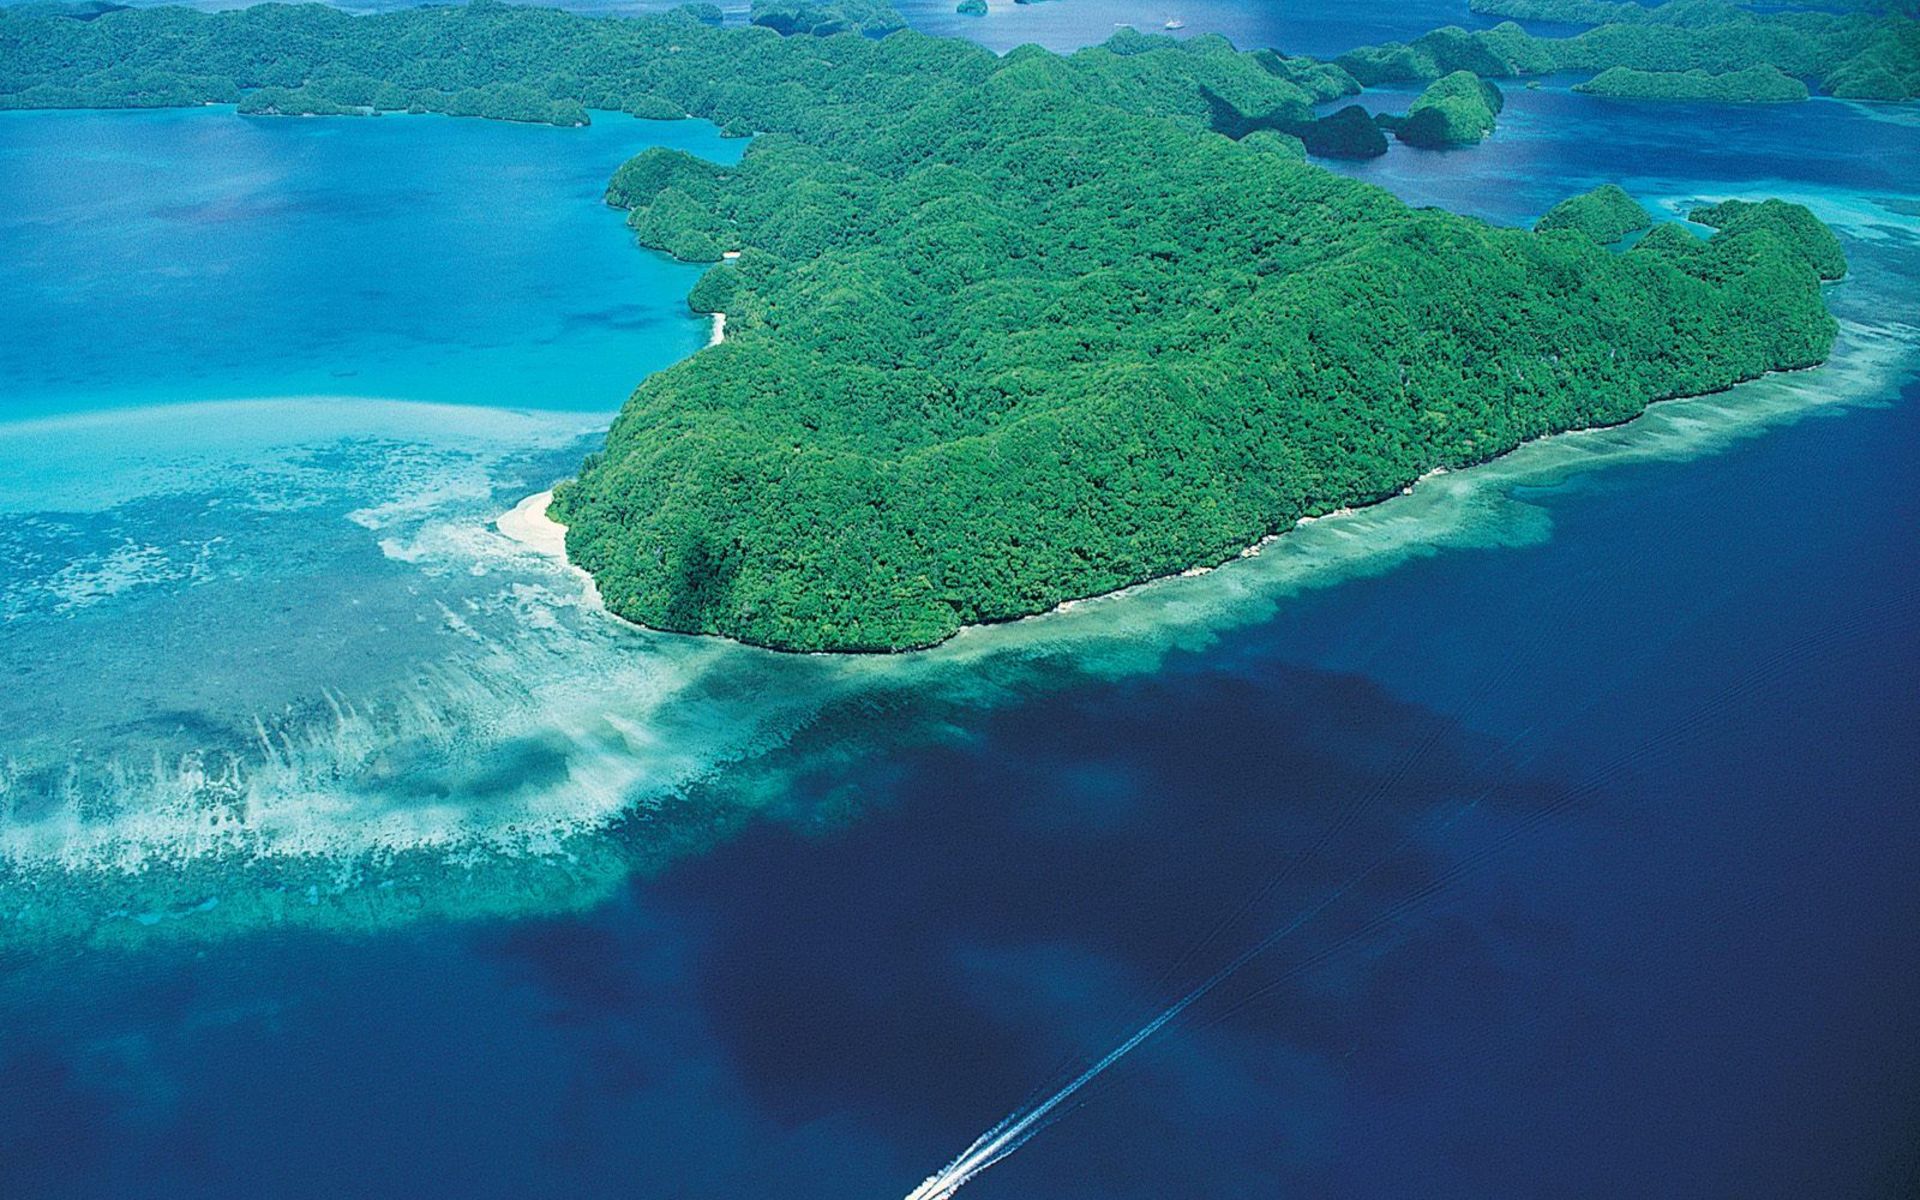 Острова южного тихого океана. Палау остров Корор. Палау желоб. Палау тихий океан. Пляжи Палау - Микронезия.